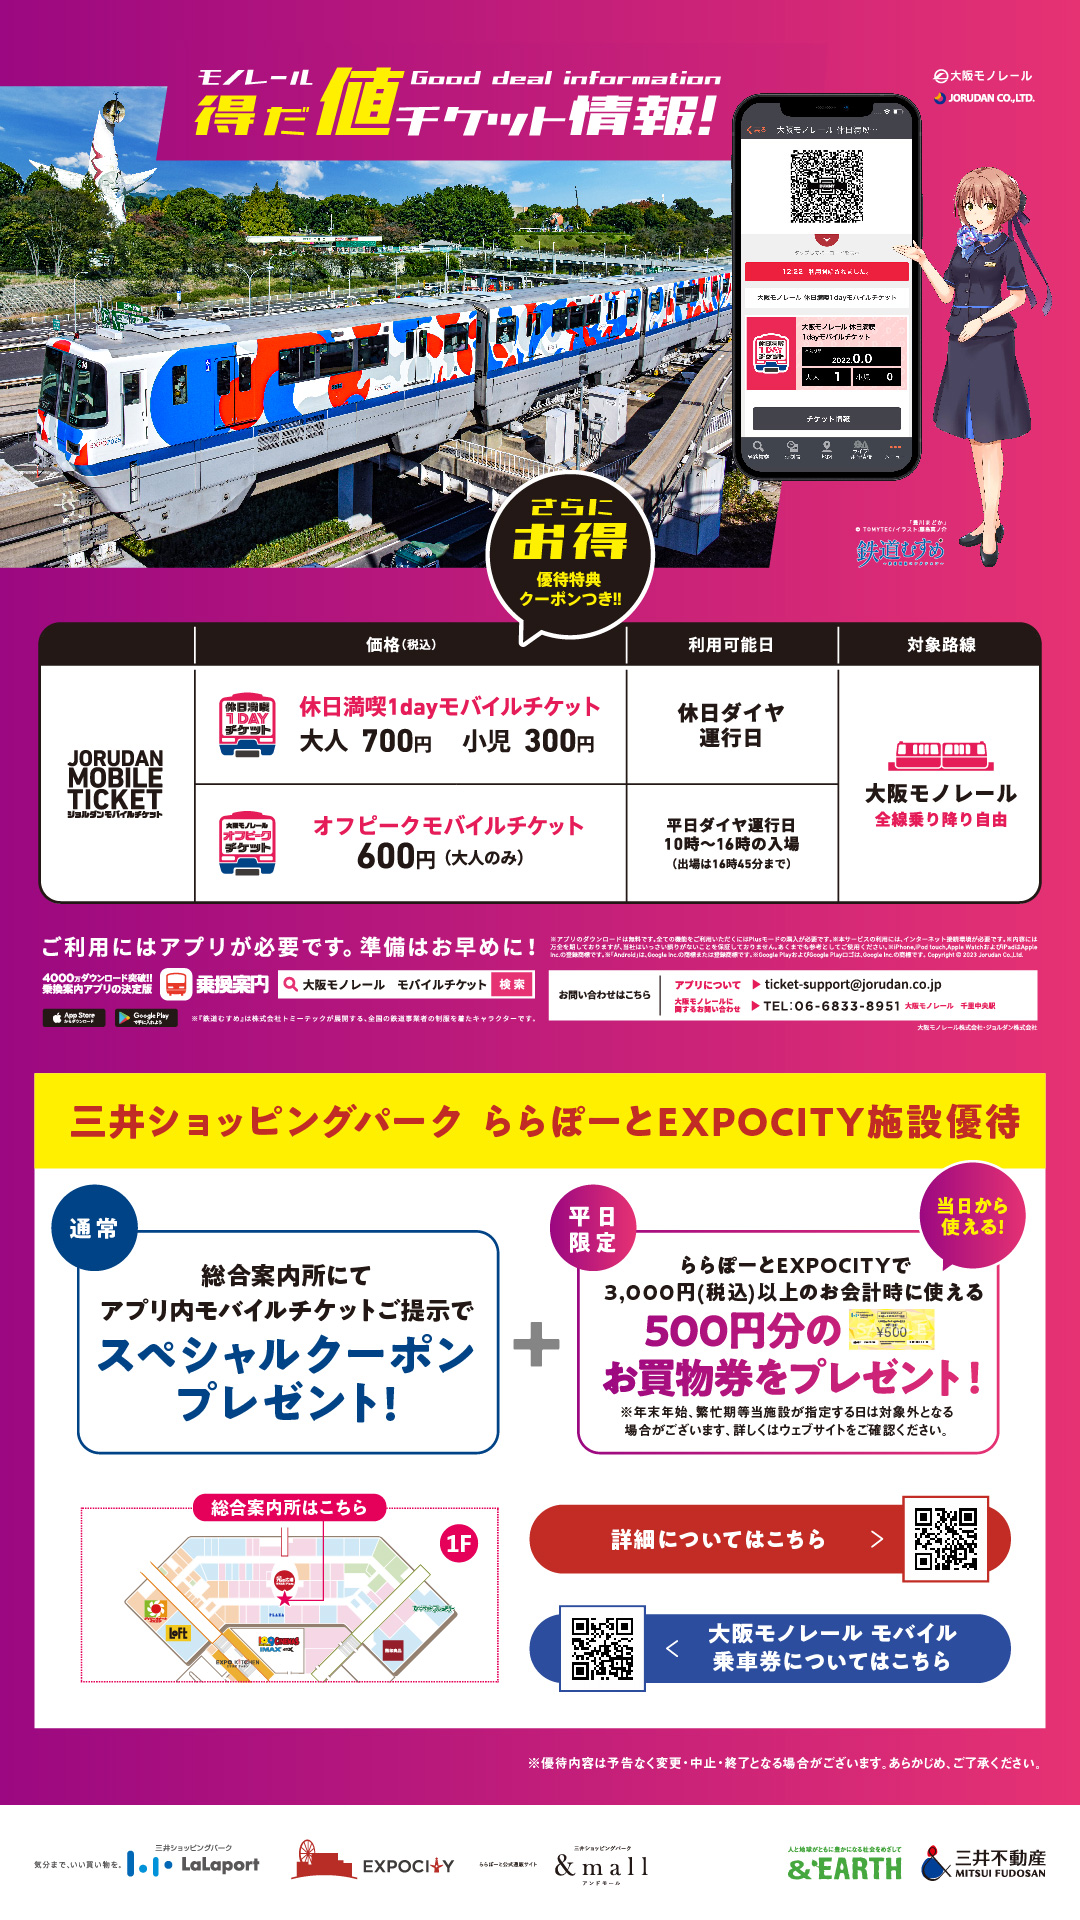 大阪モノレールモバイルチケットご提示で、EXPOCITYでお得な優待が受け